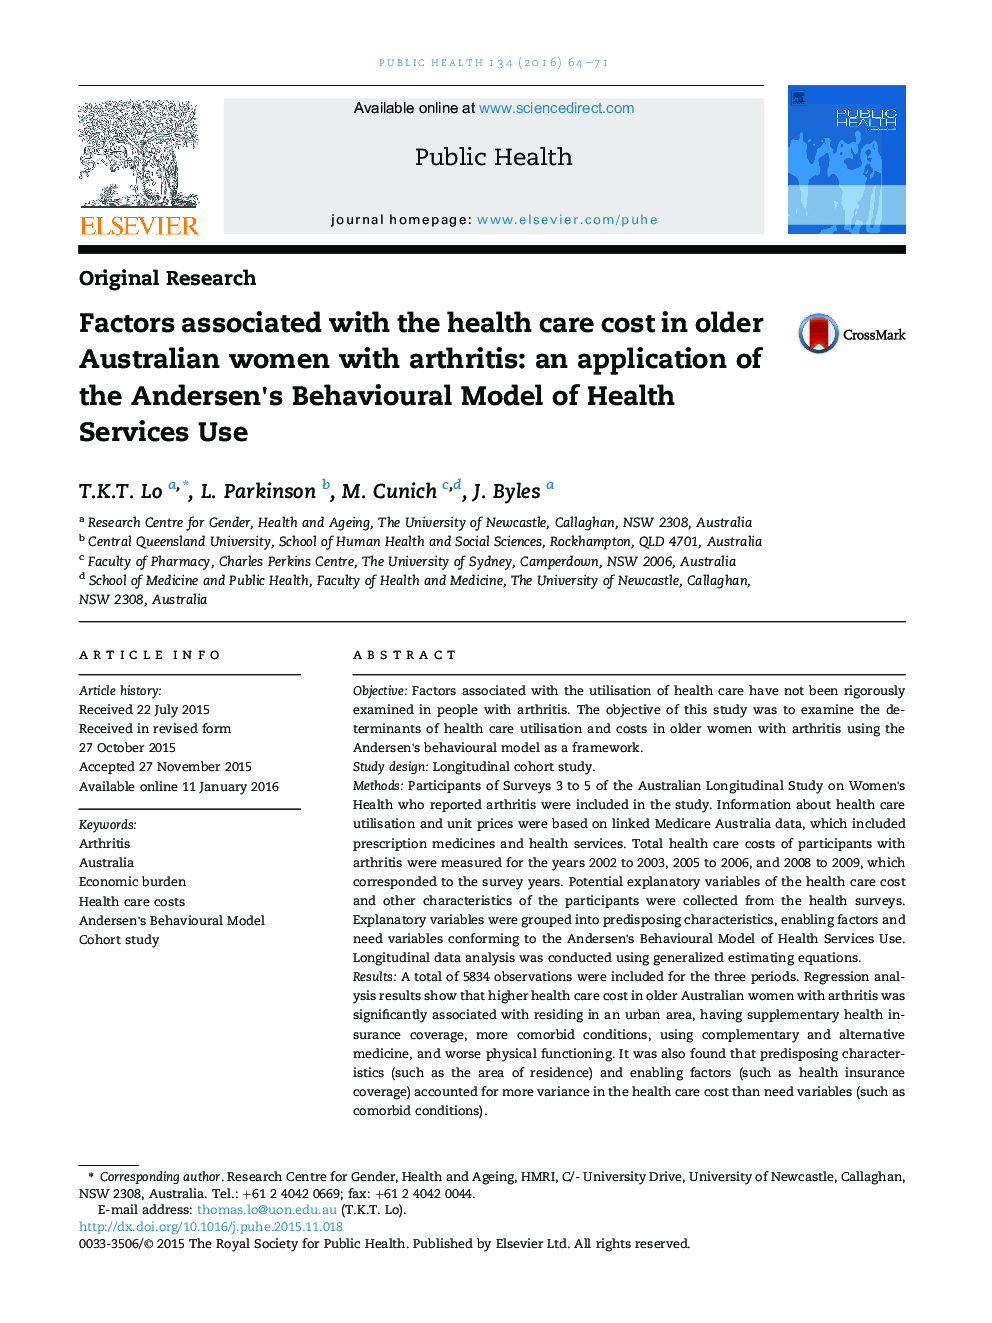 عوامل مرتبط با هزینه های مراقبت های بهداشتی در زنان سالمند استرالیا با آرتریت ها: استفاده از مدل رفتاری اندرسن استفاده از خدمات بهداشتی و درمانی